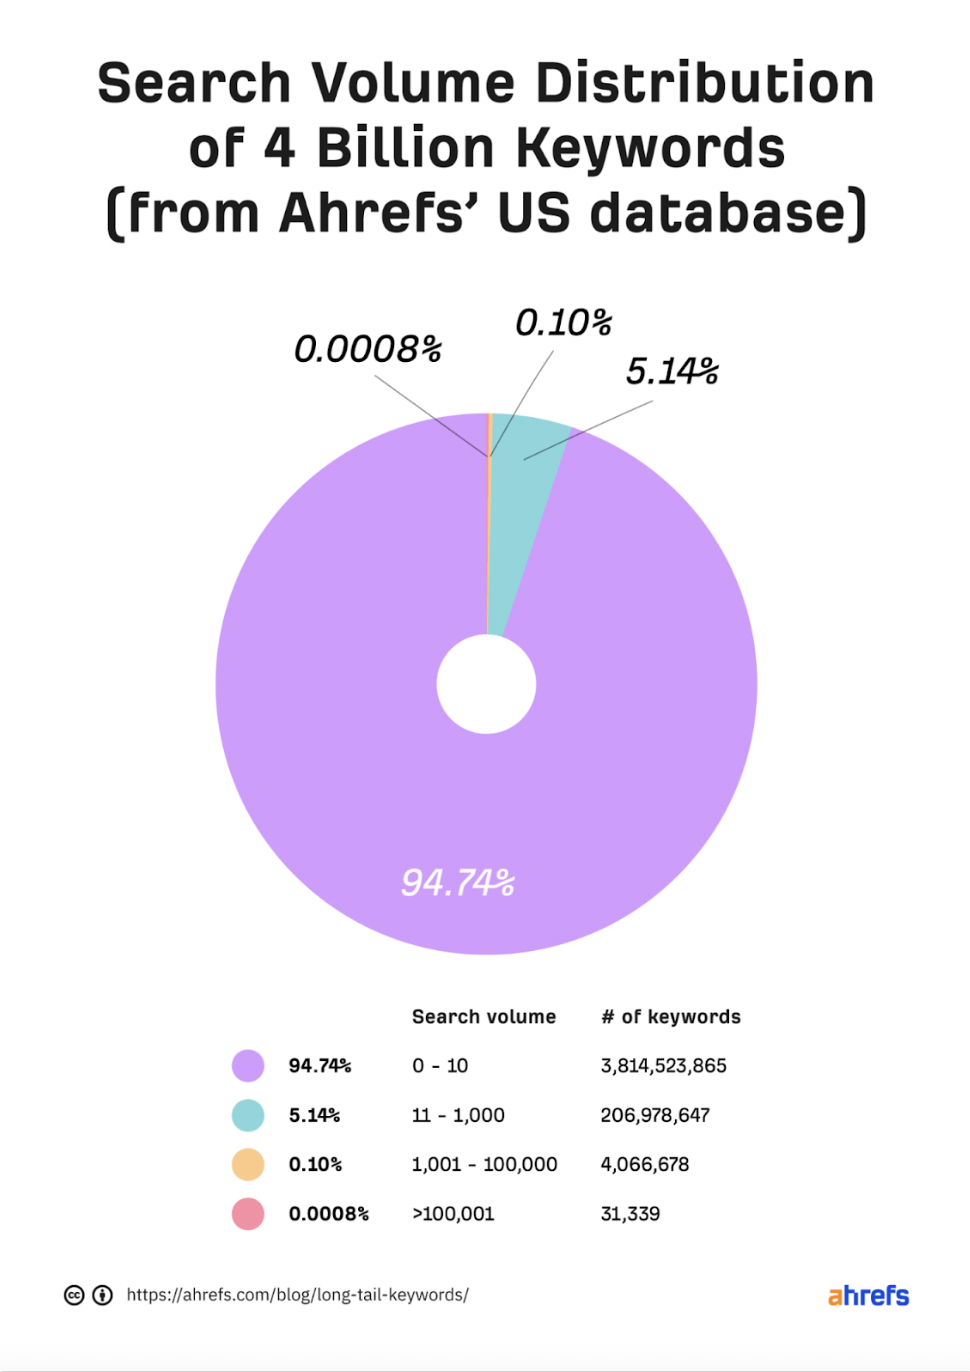 Distribución del volumen de búsqueda de 4.000 millones de palabras clave Ahrefs